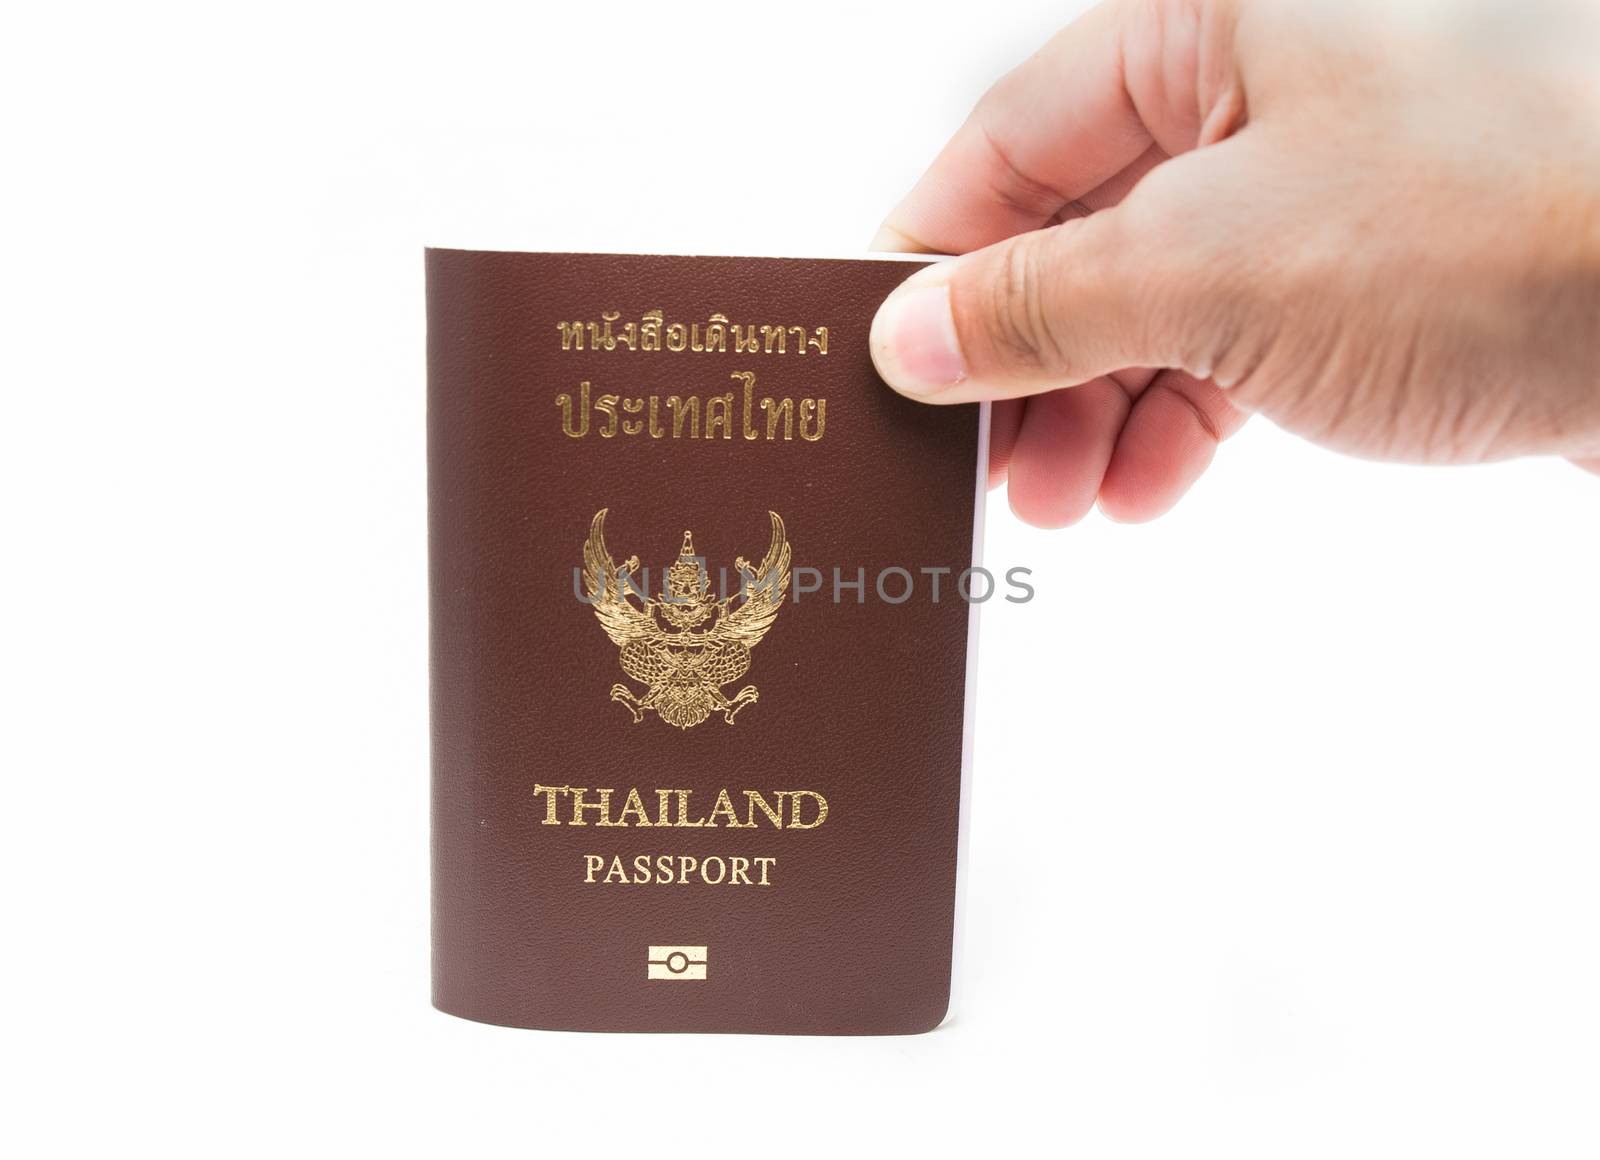 Thailand passport by Sorapop